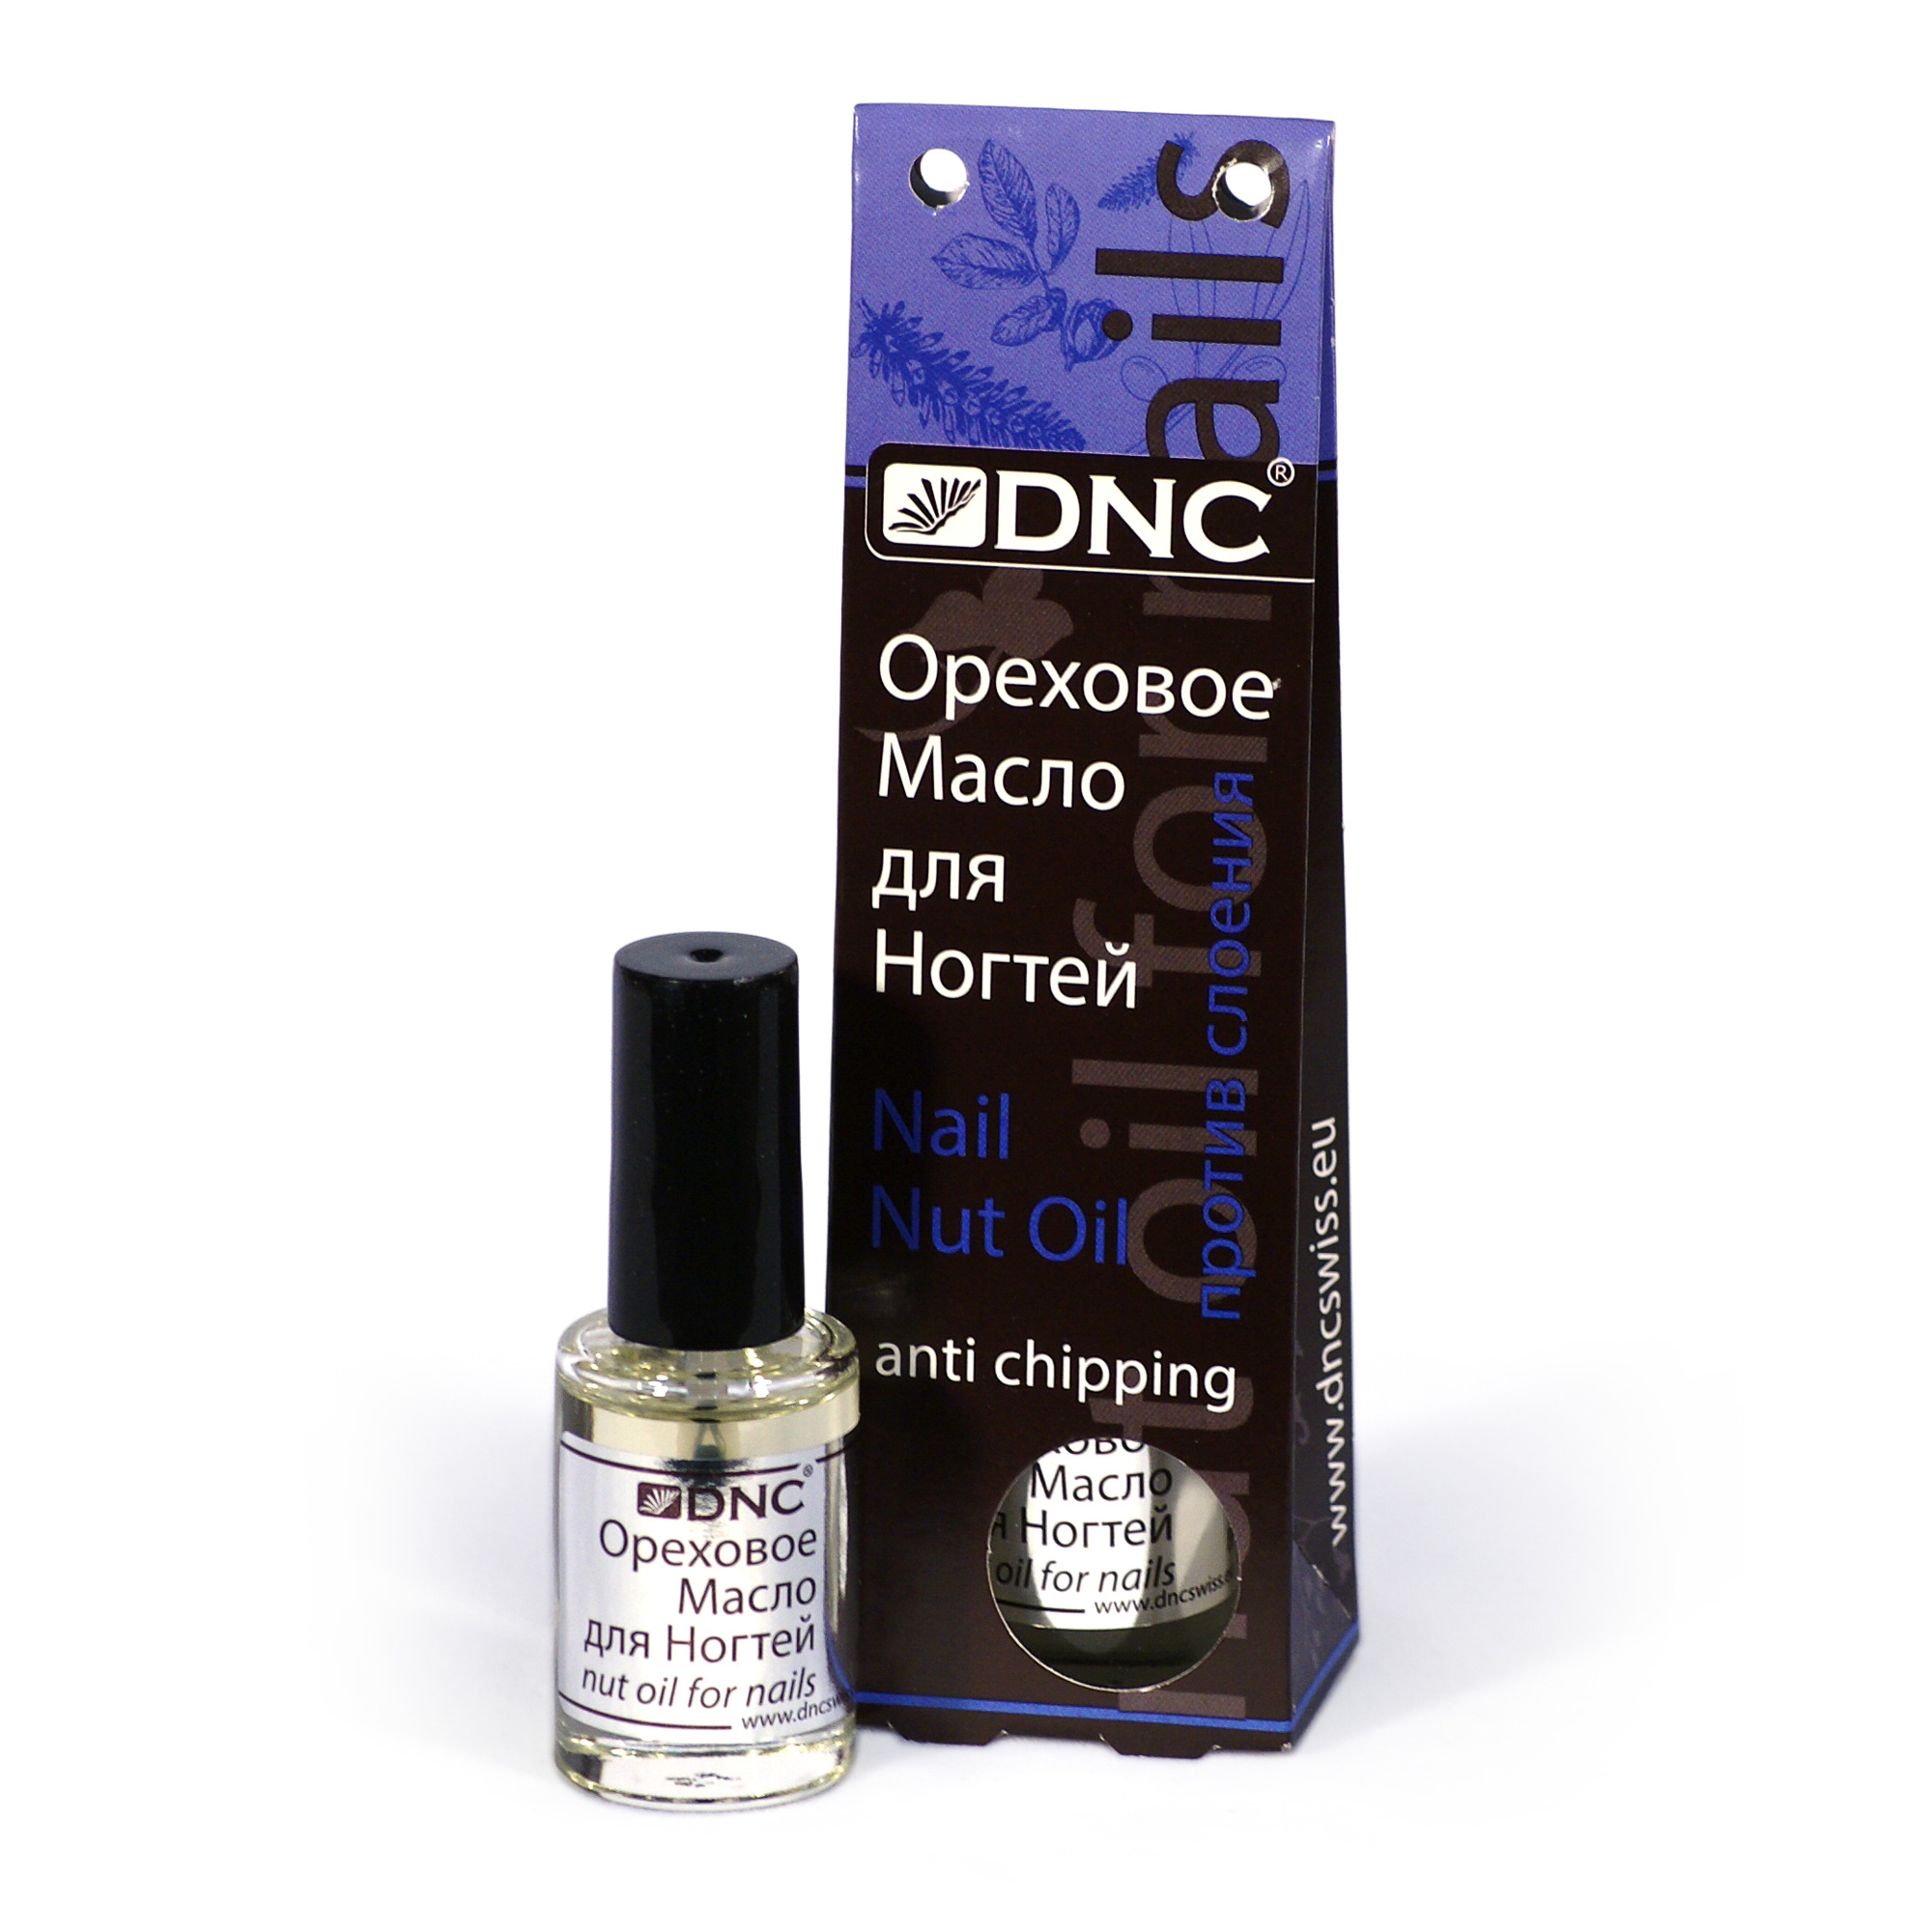 DNC Ореховое масло для ногтей,  против слоения, 6 мл - фото 1